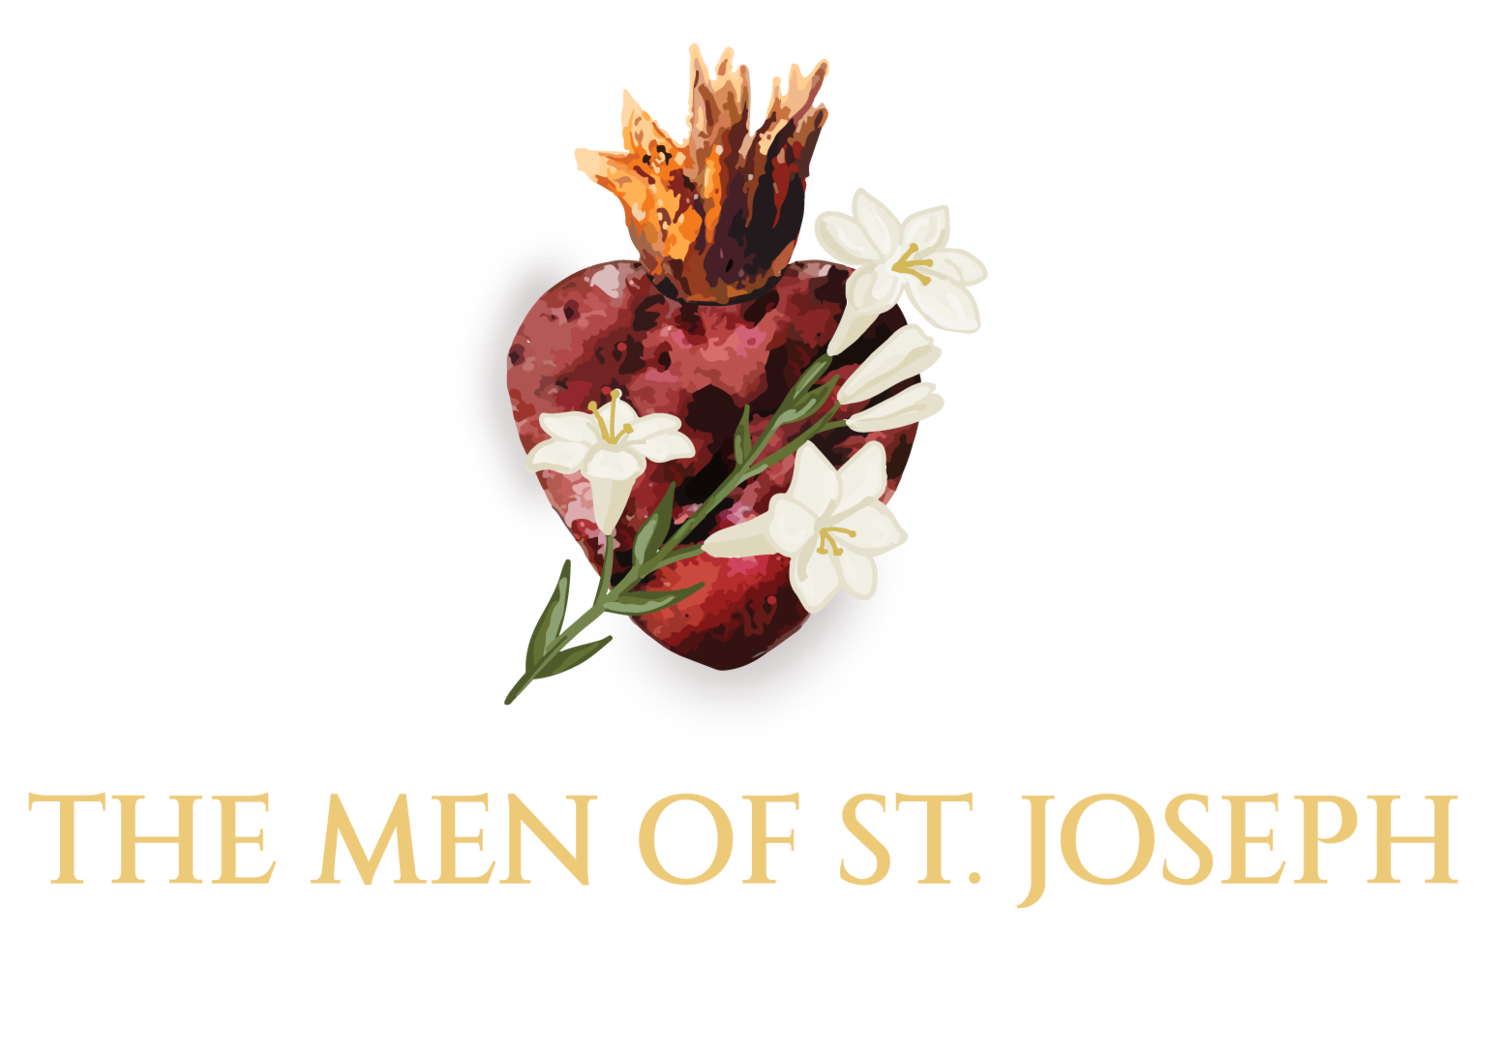 The Men of St. Joseph